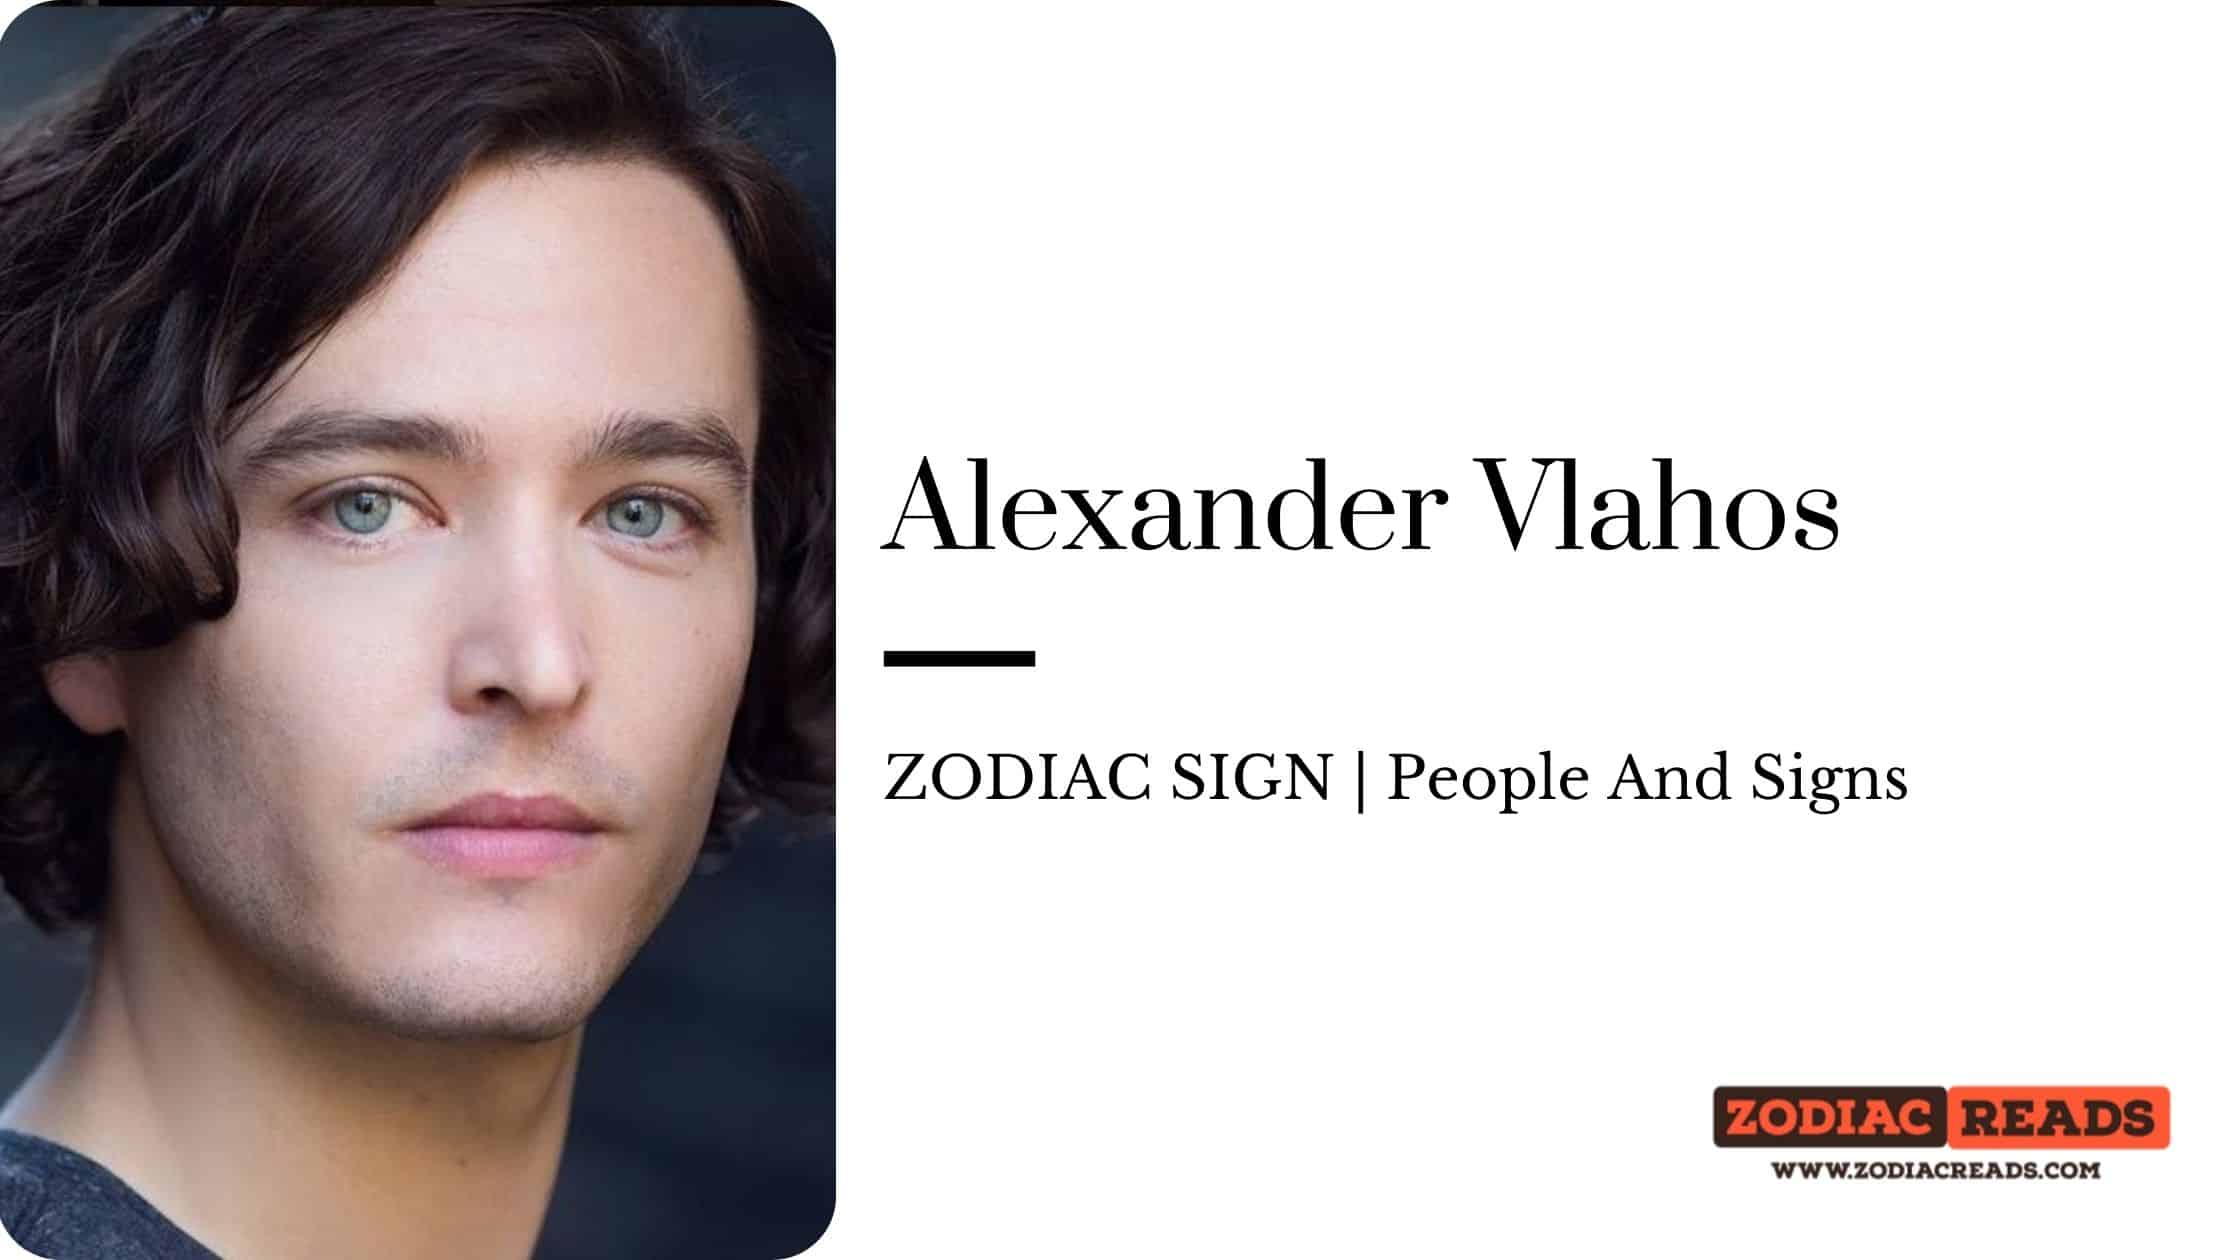 Alexander Vlahos zodiac